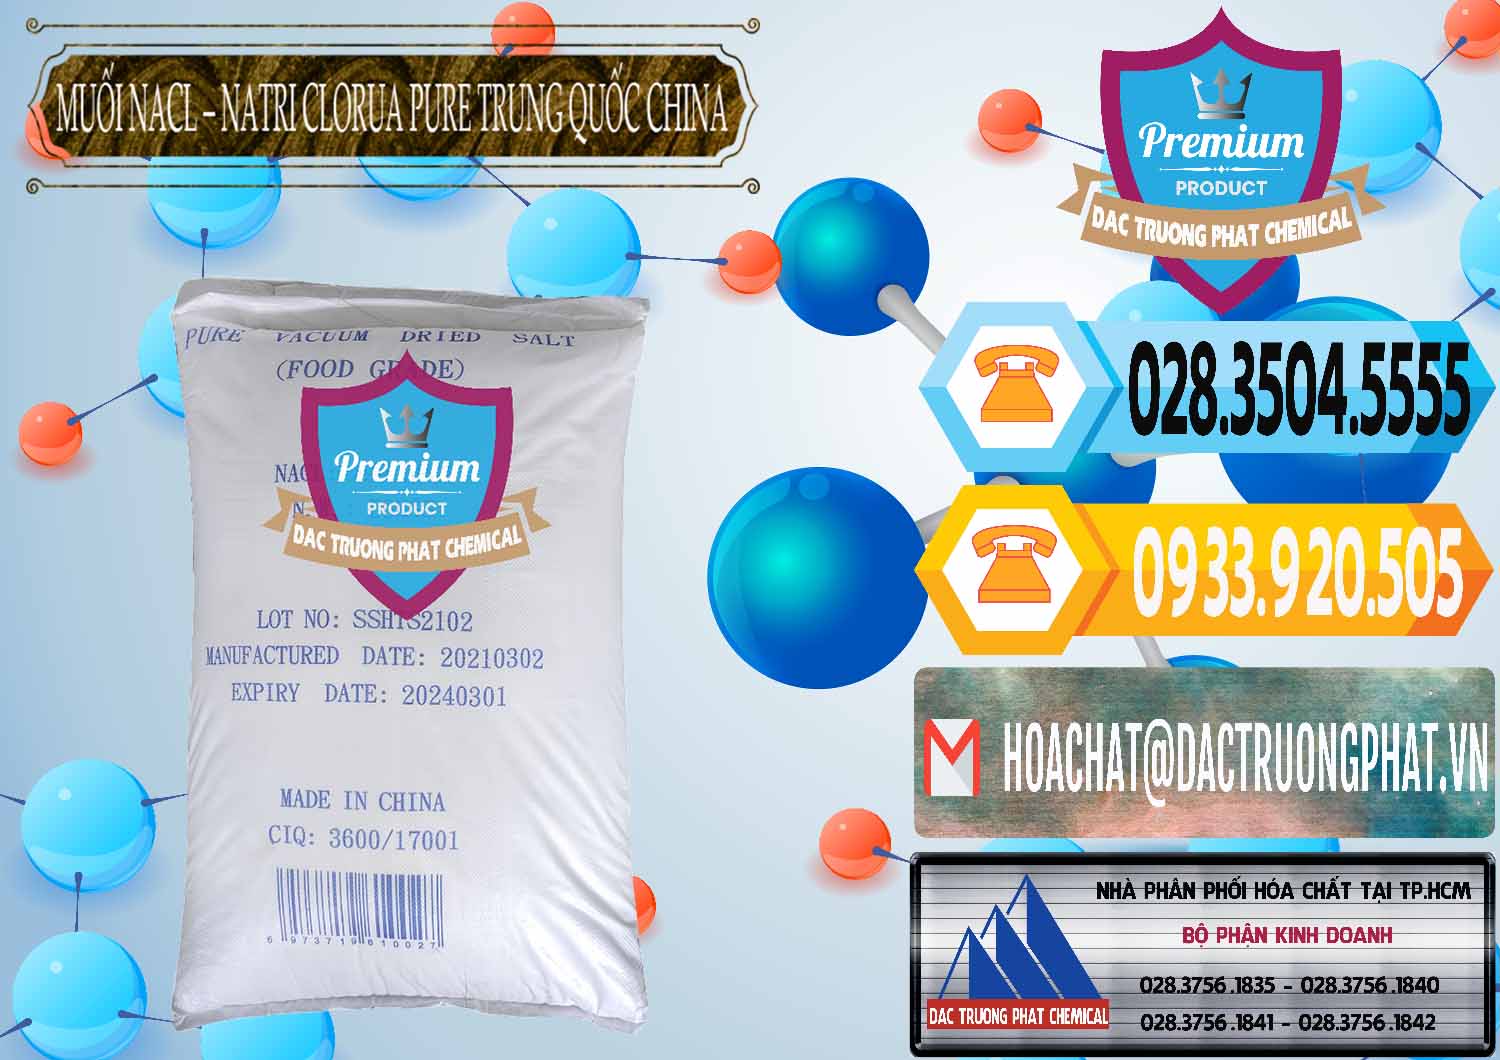 Cty cung cấp _ bán Muối NaCL – Sodium Chloride Pure Trung Quốc China - 0230 - Đơn vị chuyên cung cấp và bán hóa chất tại TP.HCM - hoachattayrua.net